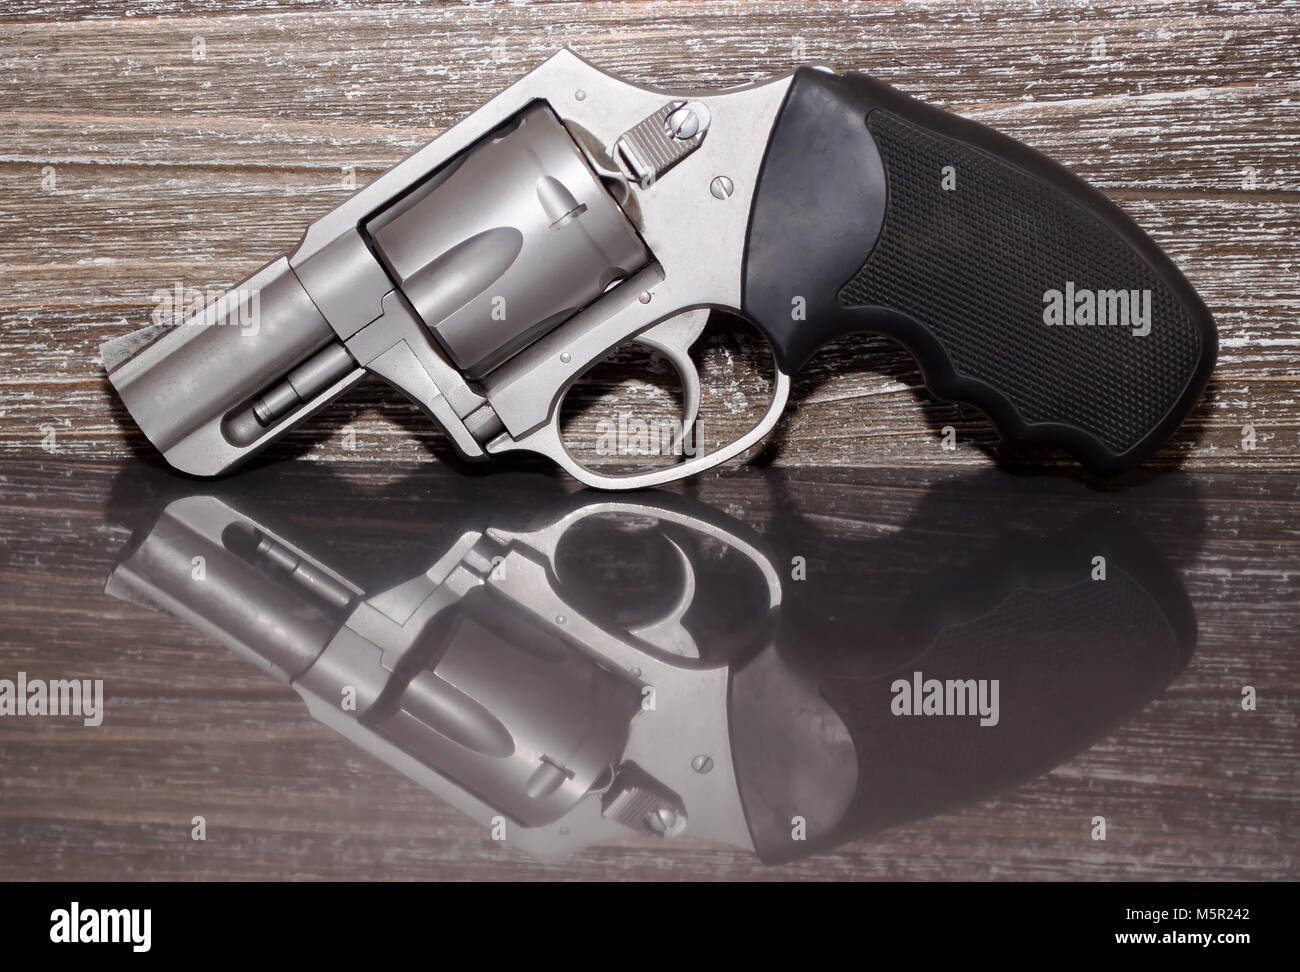 Un revolver Magnum 357 acier inoxydable sur une surface réfléchissante avec un fond de bois Banque D'Images